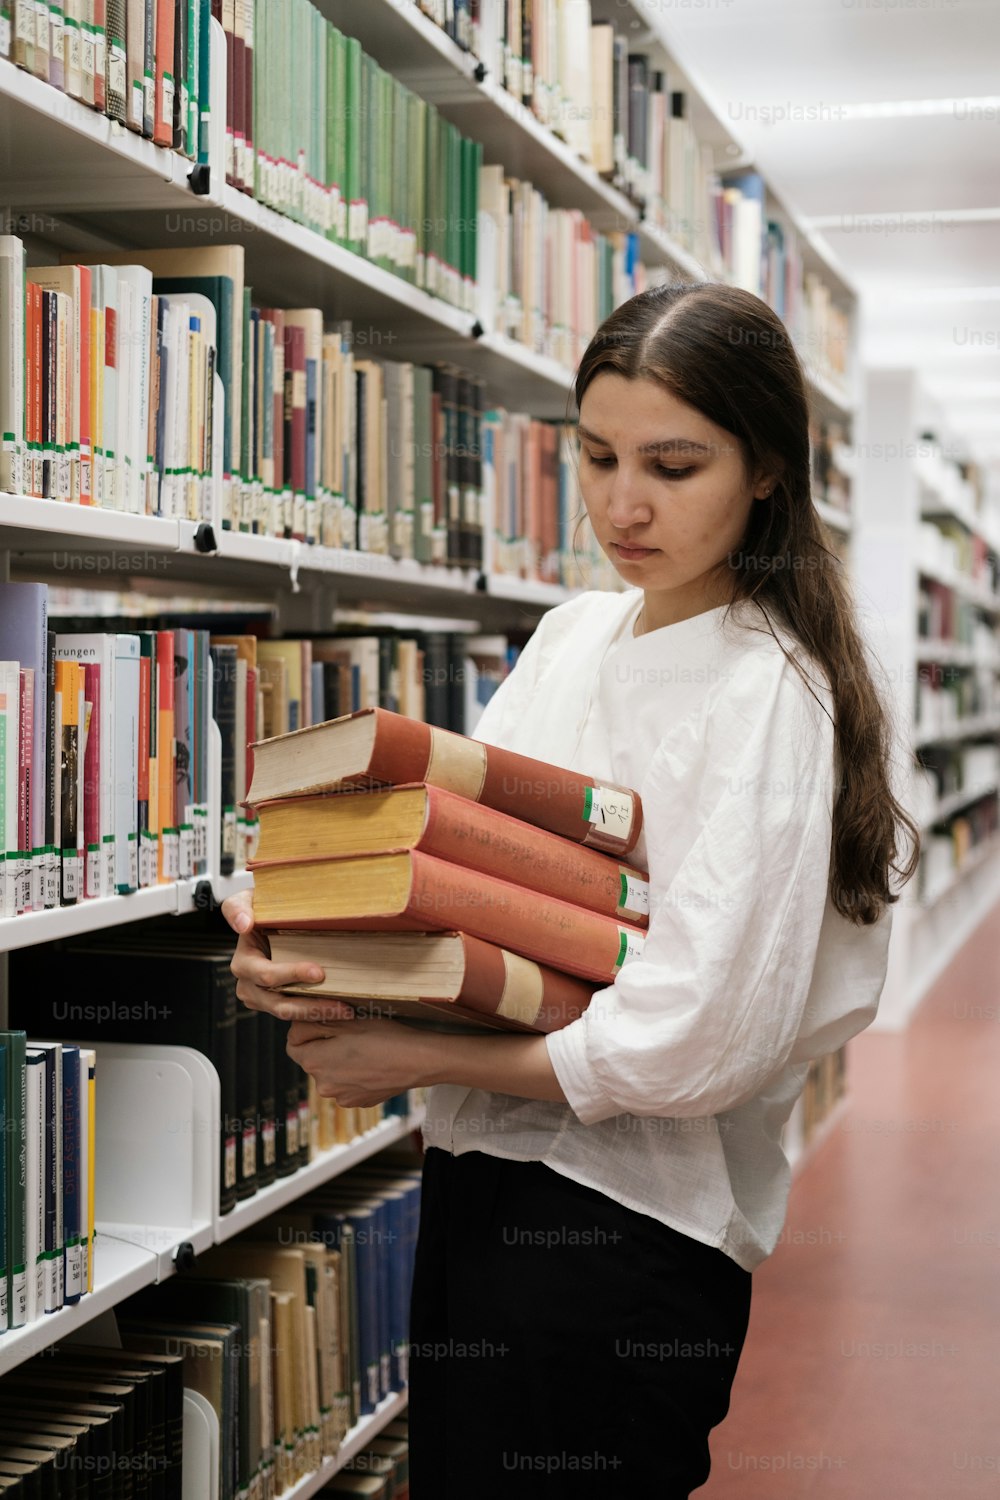 Una donna che tiene una pila di libri in una biblioteca